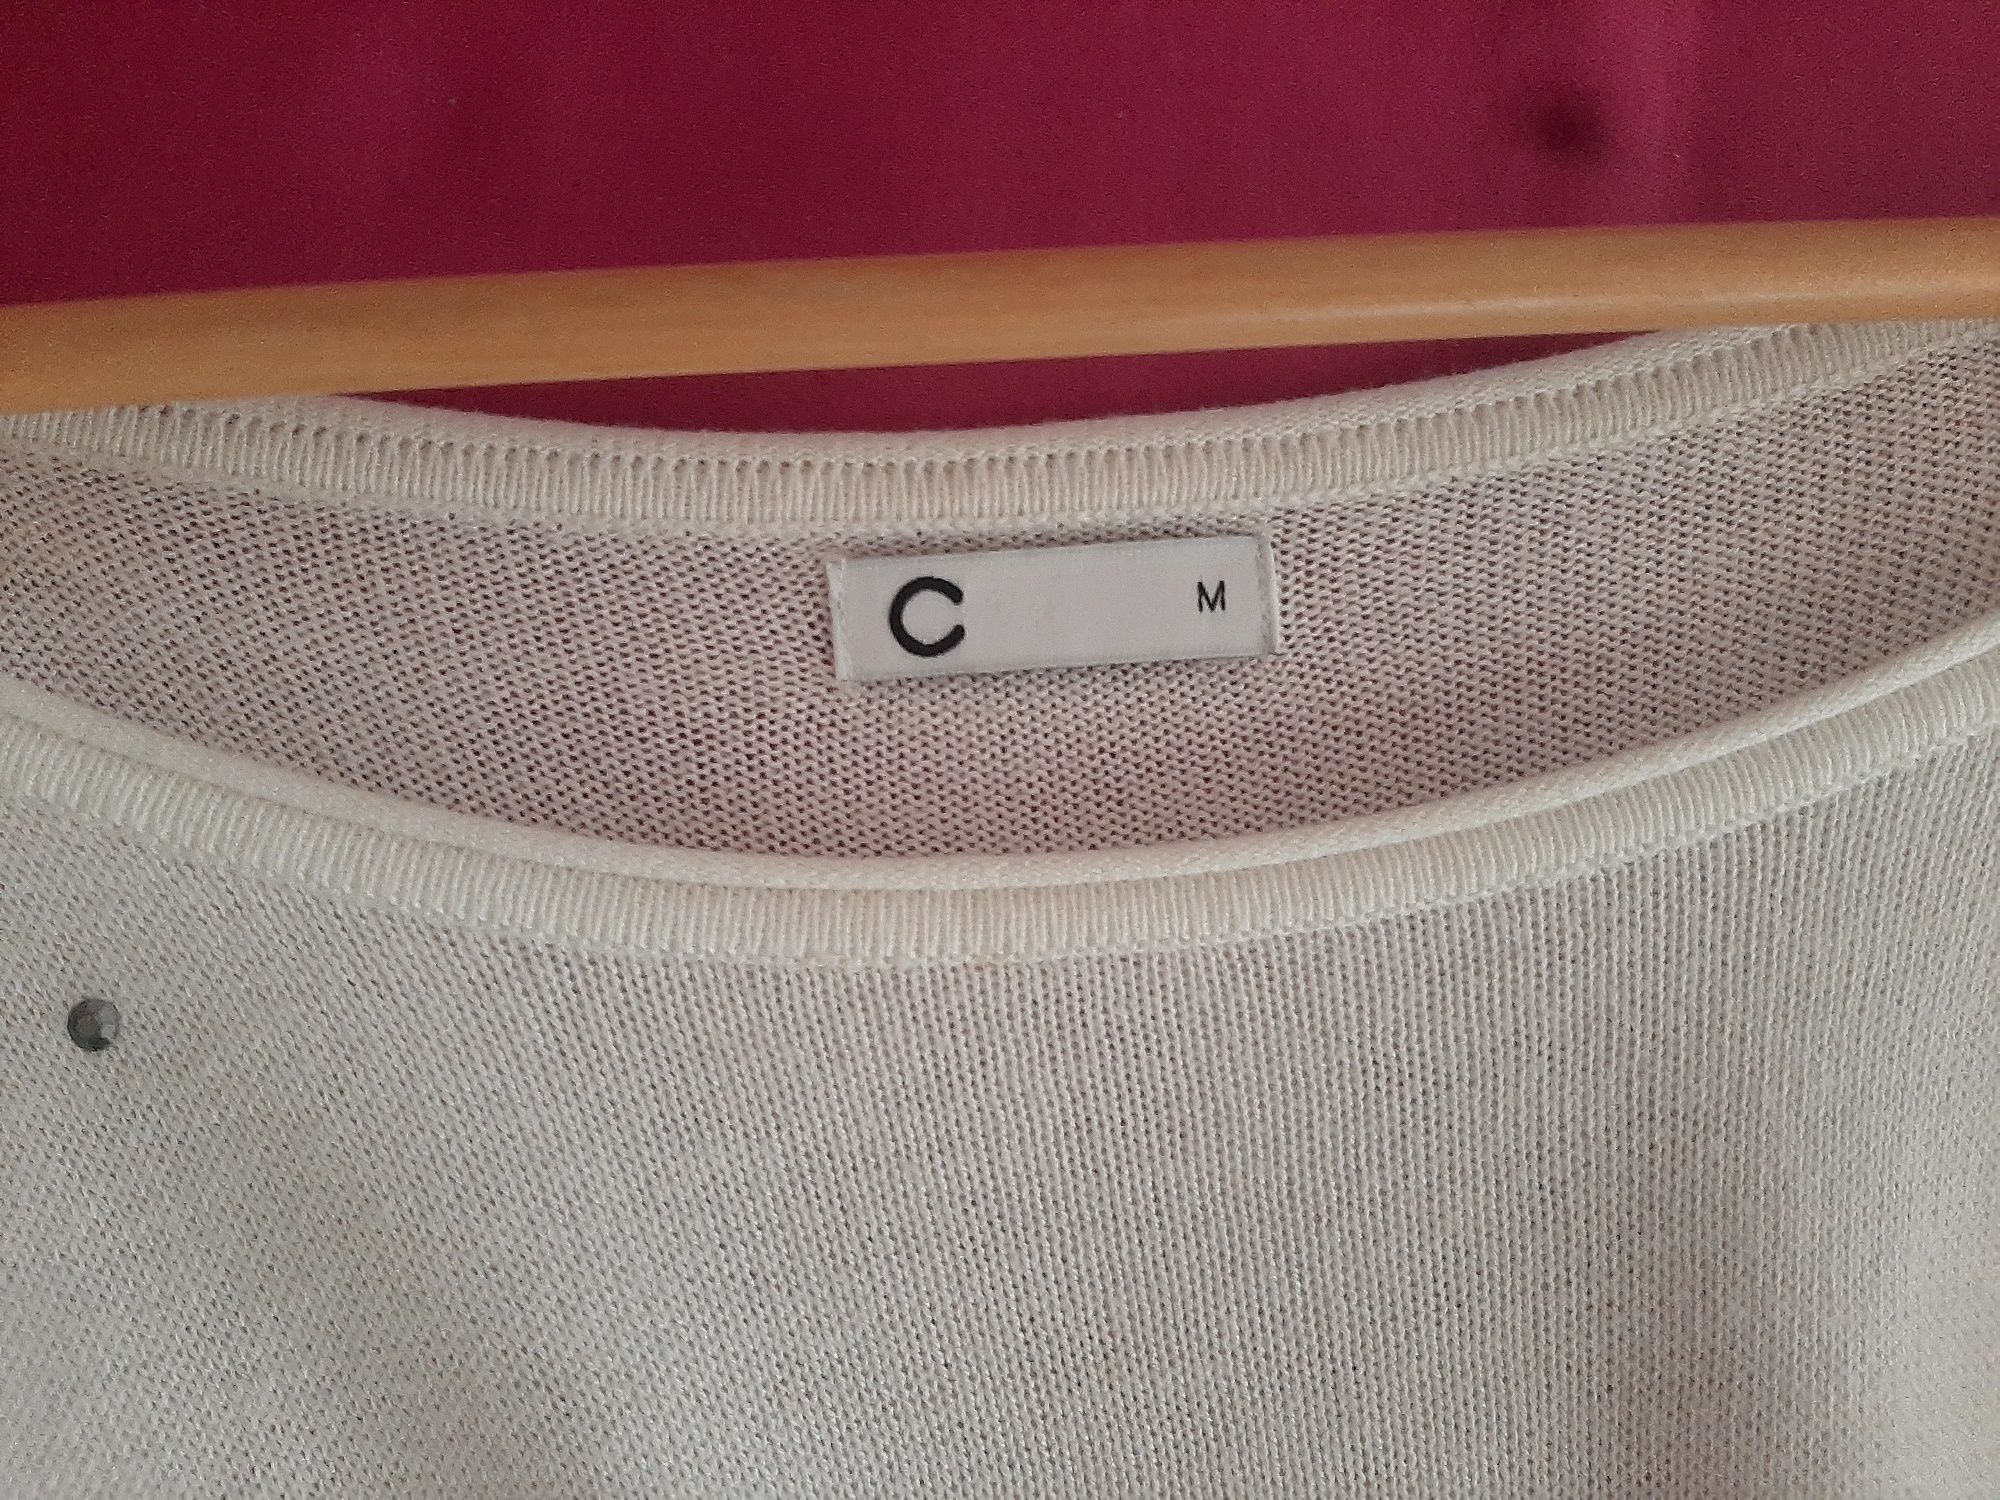 Kremowa ecru tunika dłuższa bluzka bluzeczka ozdobna M 38  L 40 Cubus